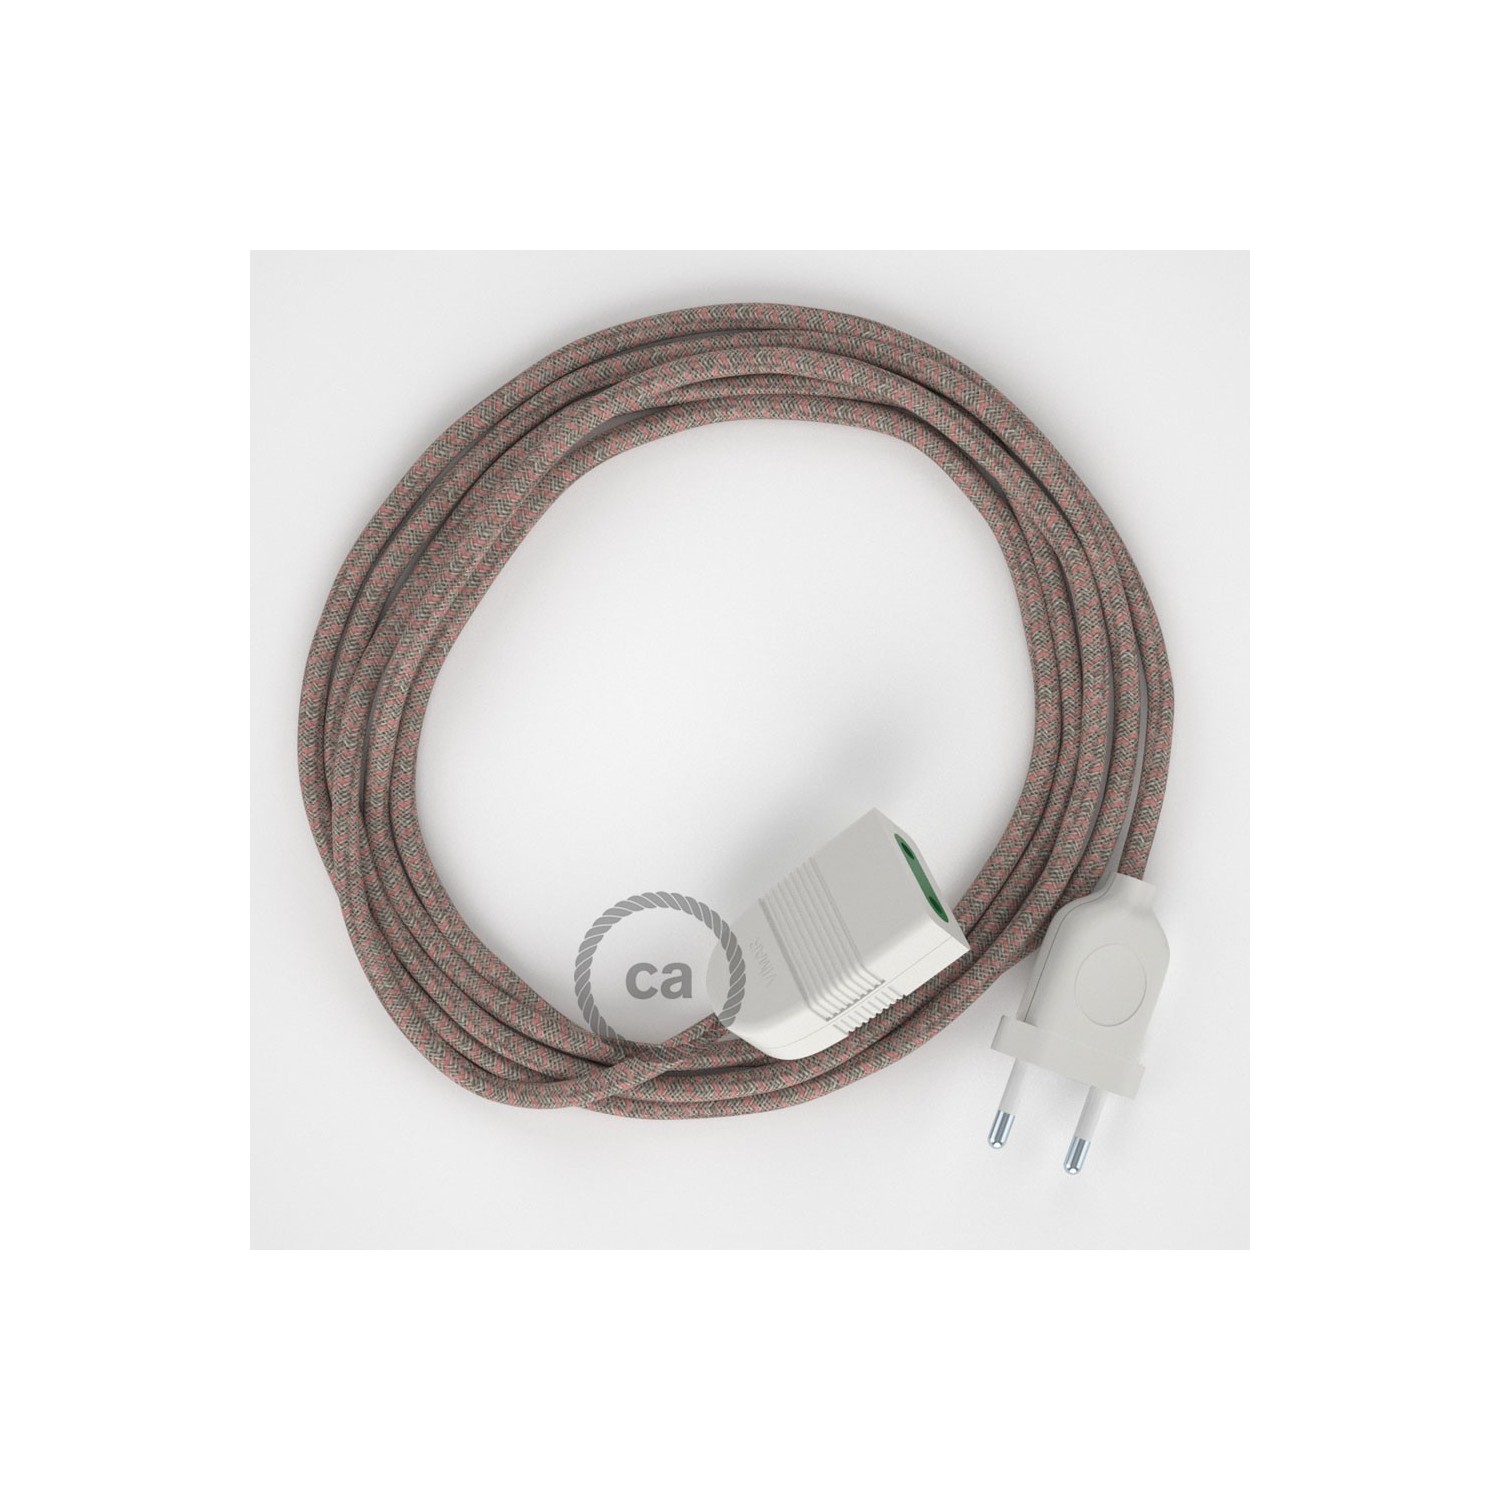 Kosočtvercový starorůžový bavlněně - lněný RD61 2P 10A textilní prodlužovací elektrický kabel. Vyrobený v Itálii.